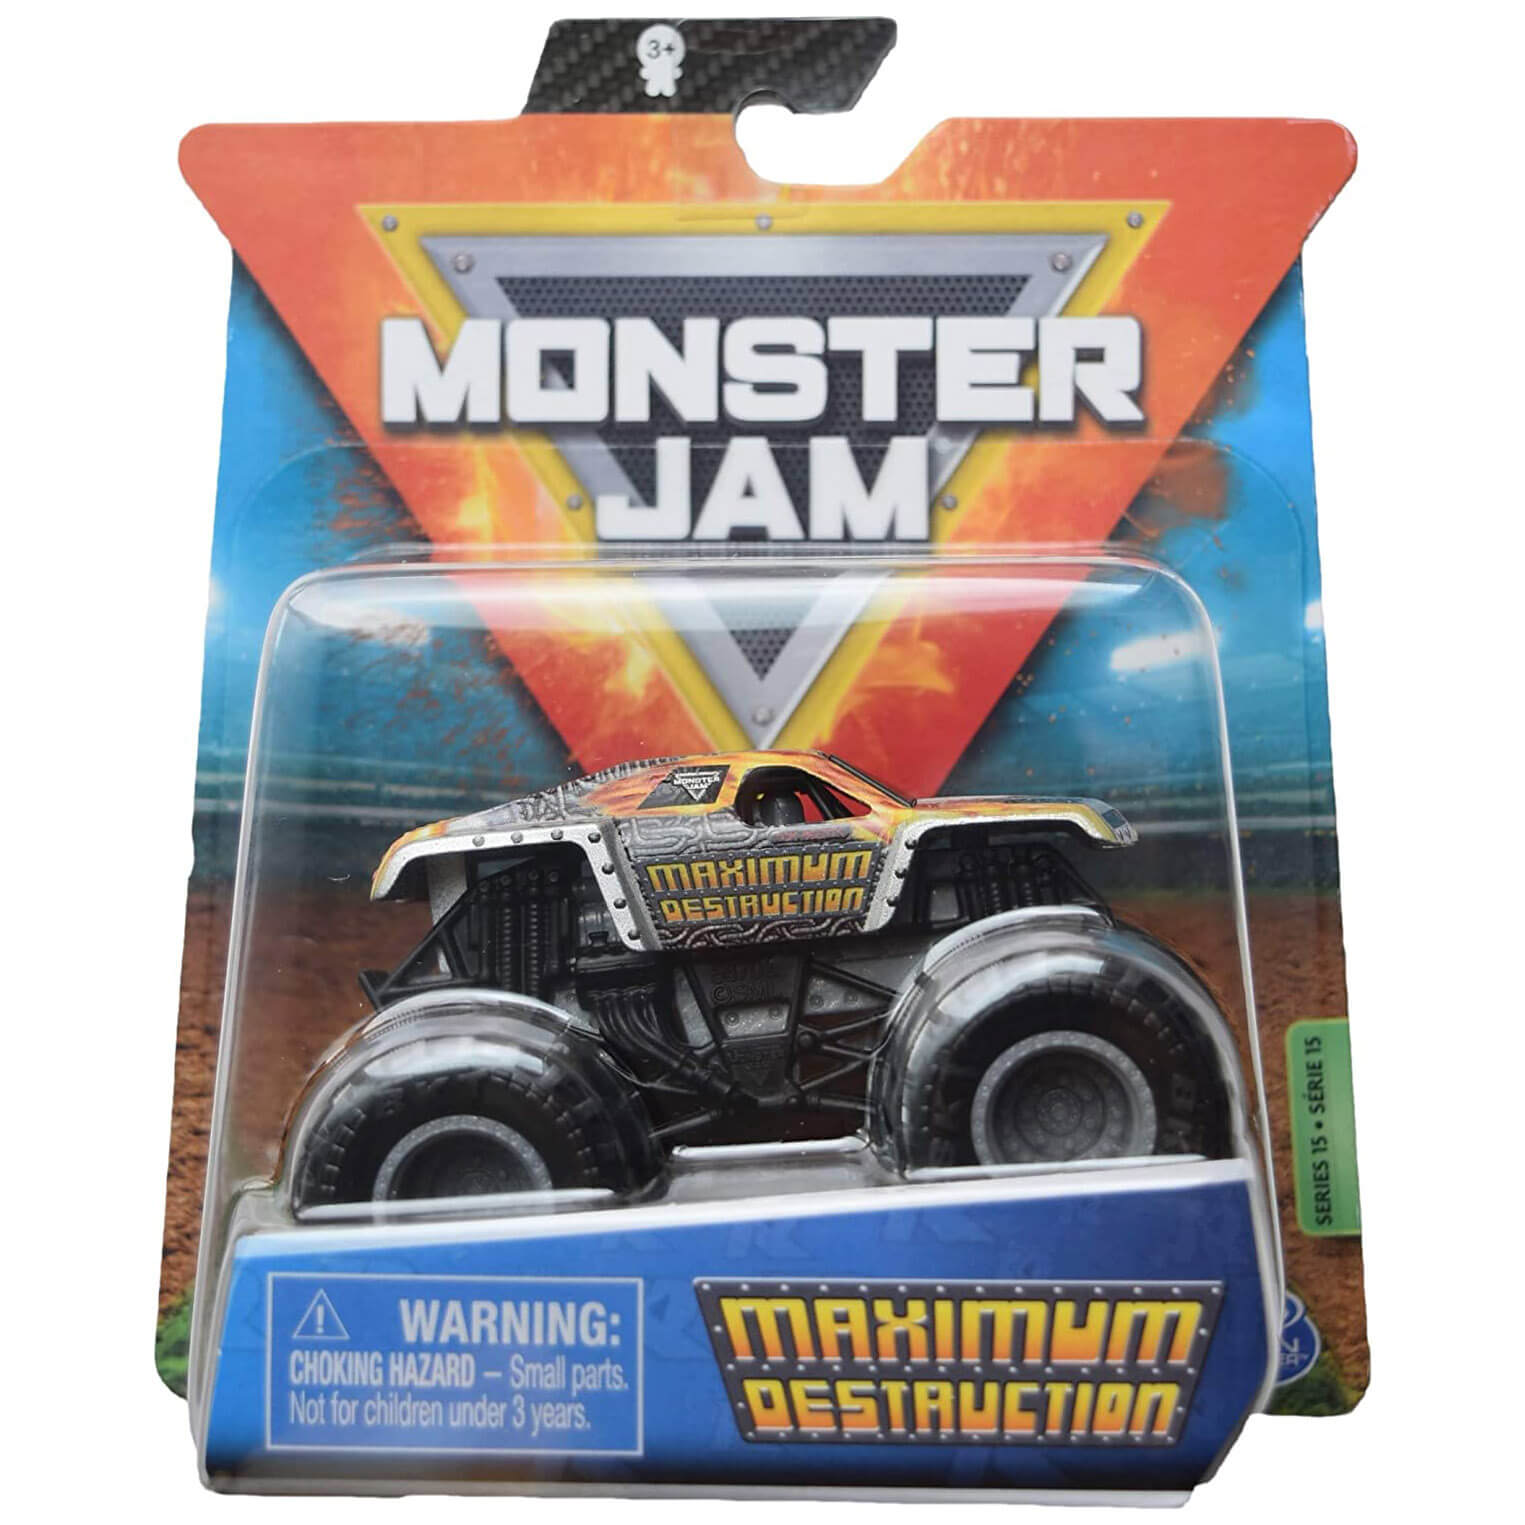 Monster Jam Maximum Destruction 1:64 Scale Diecast Vehicle